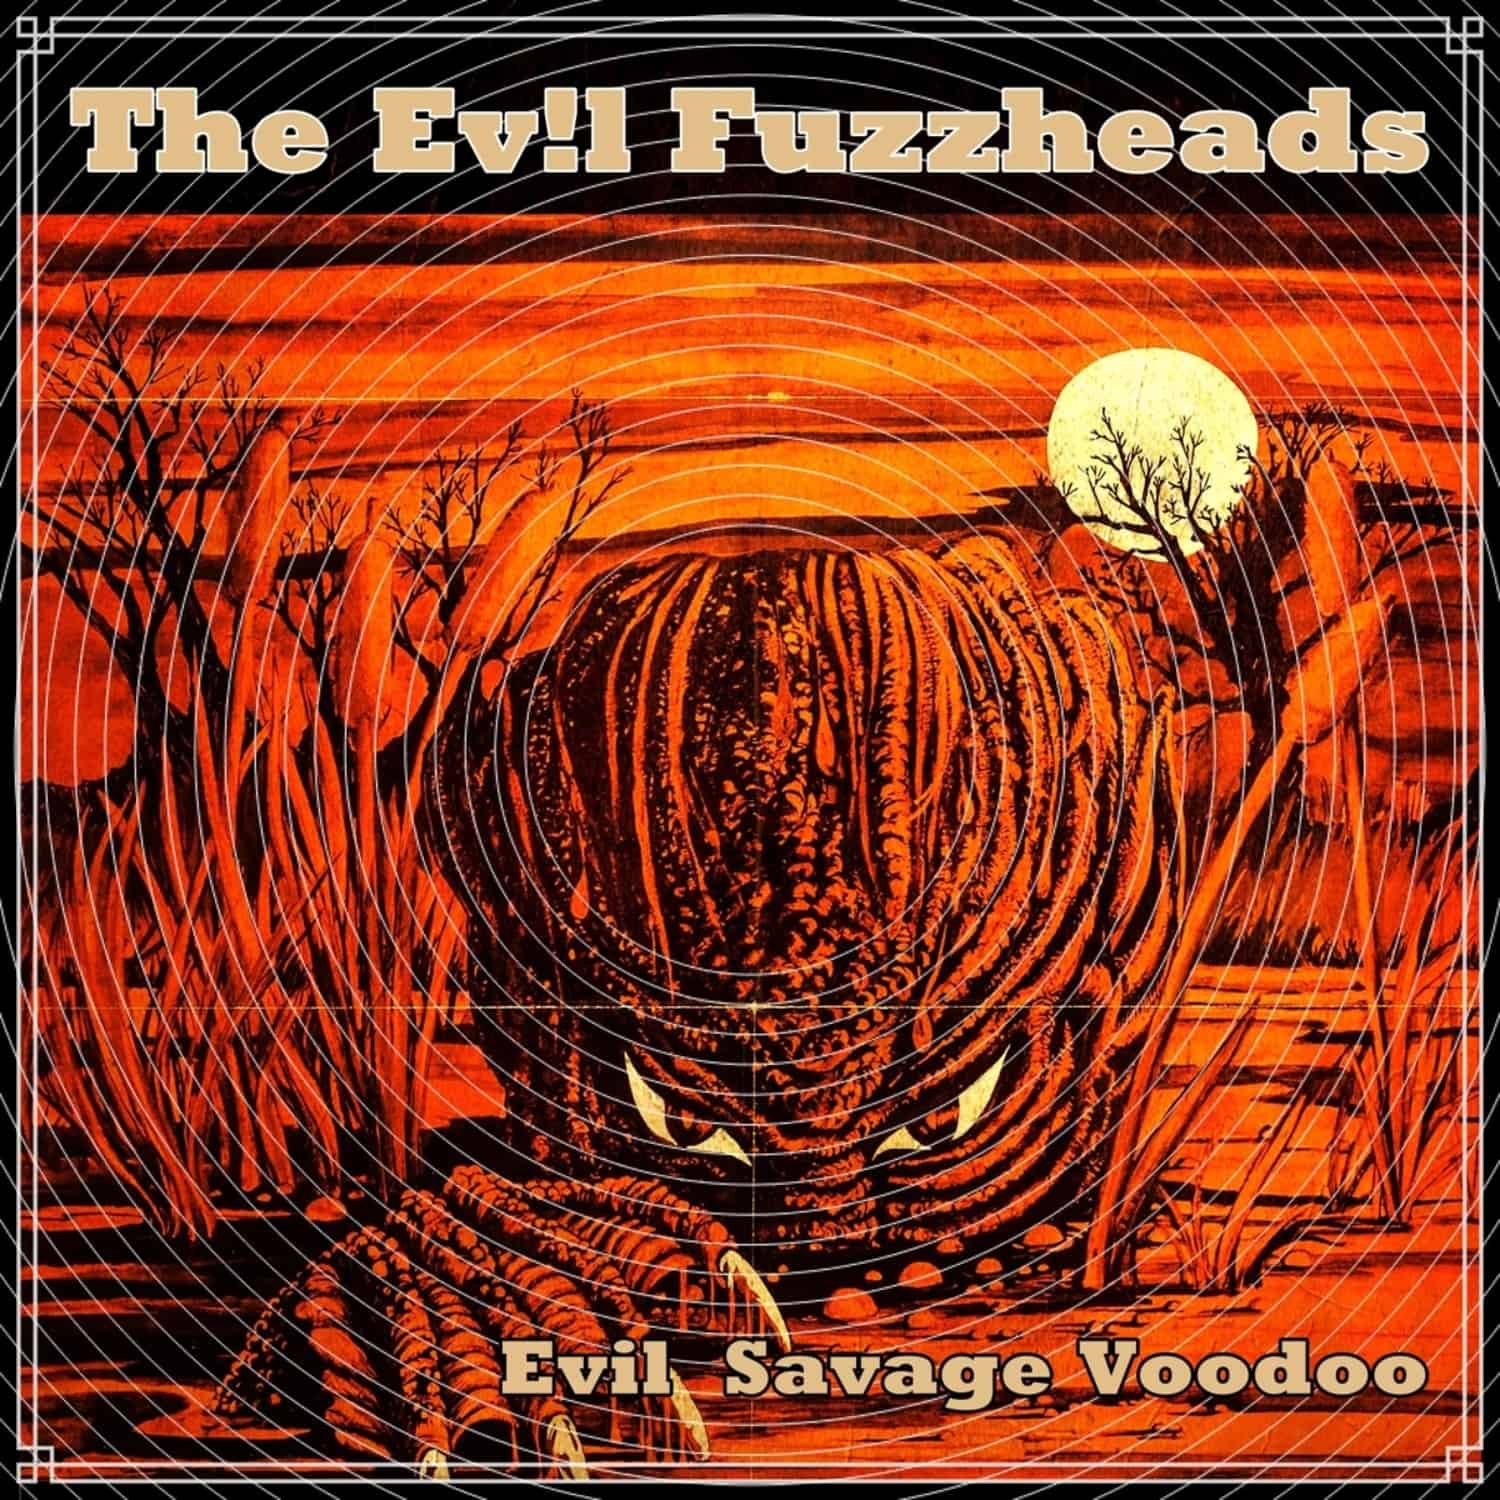  The Evil Fuzzheads - EVIL SAVAGE VOODOO 